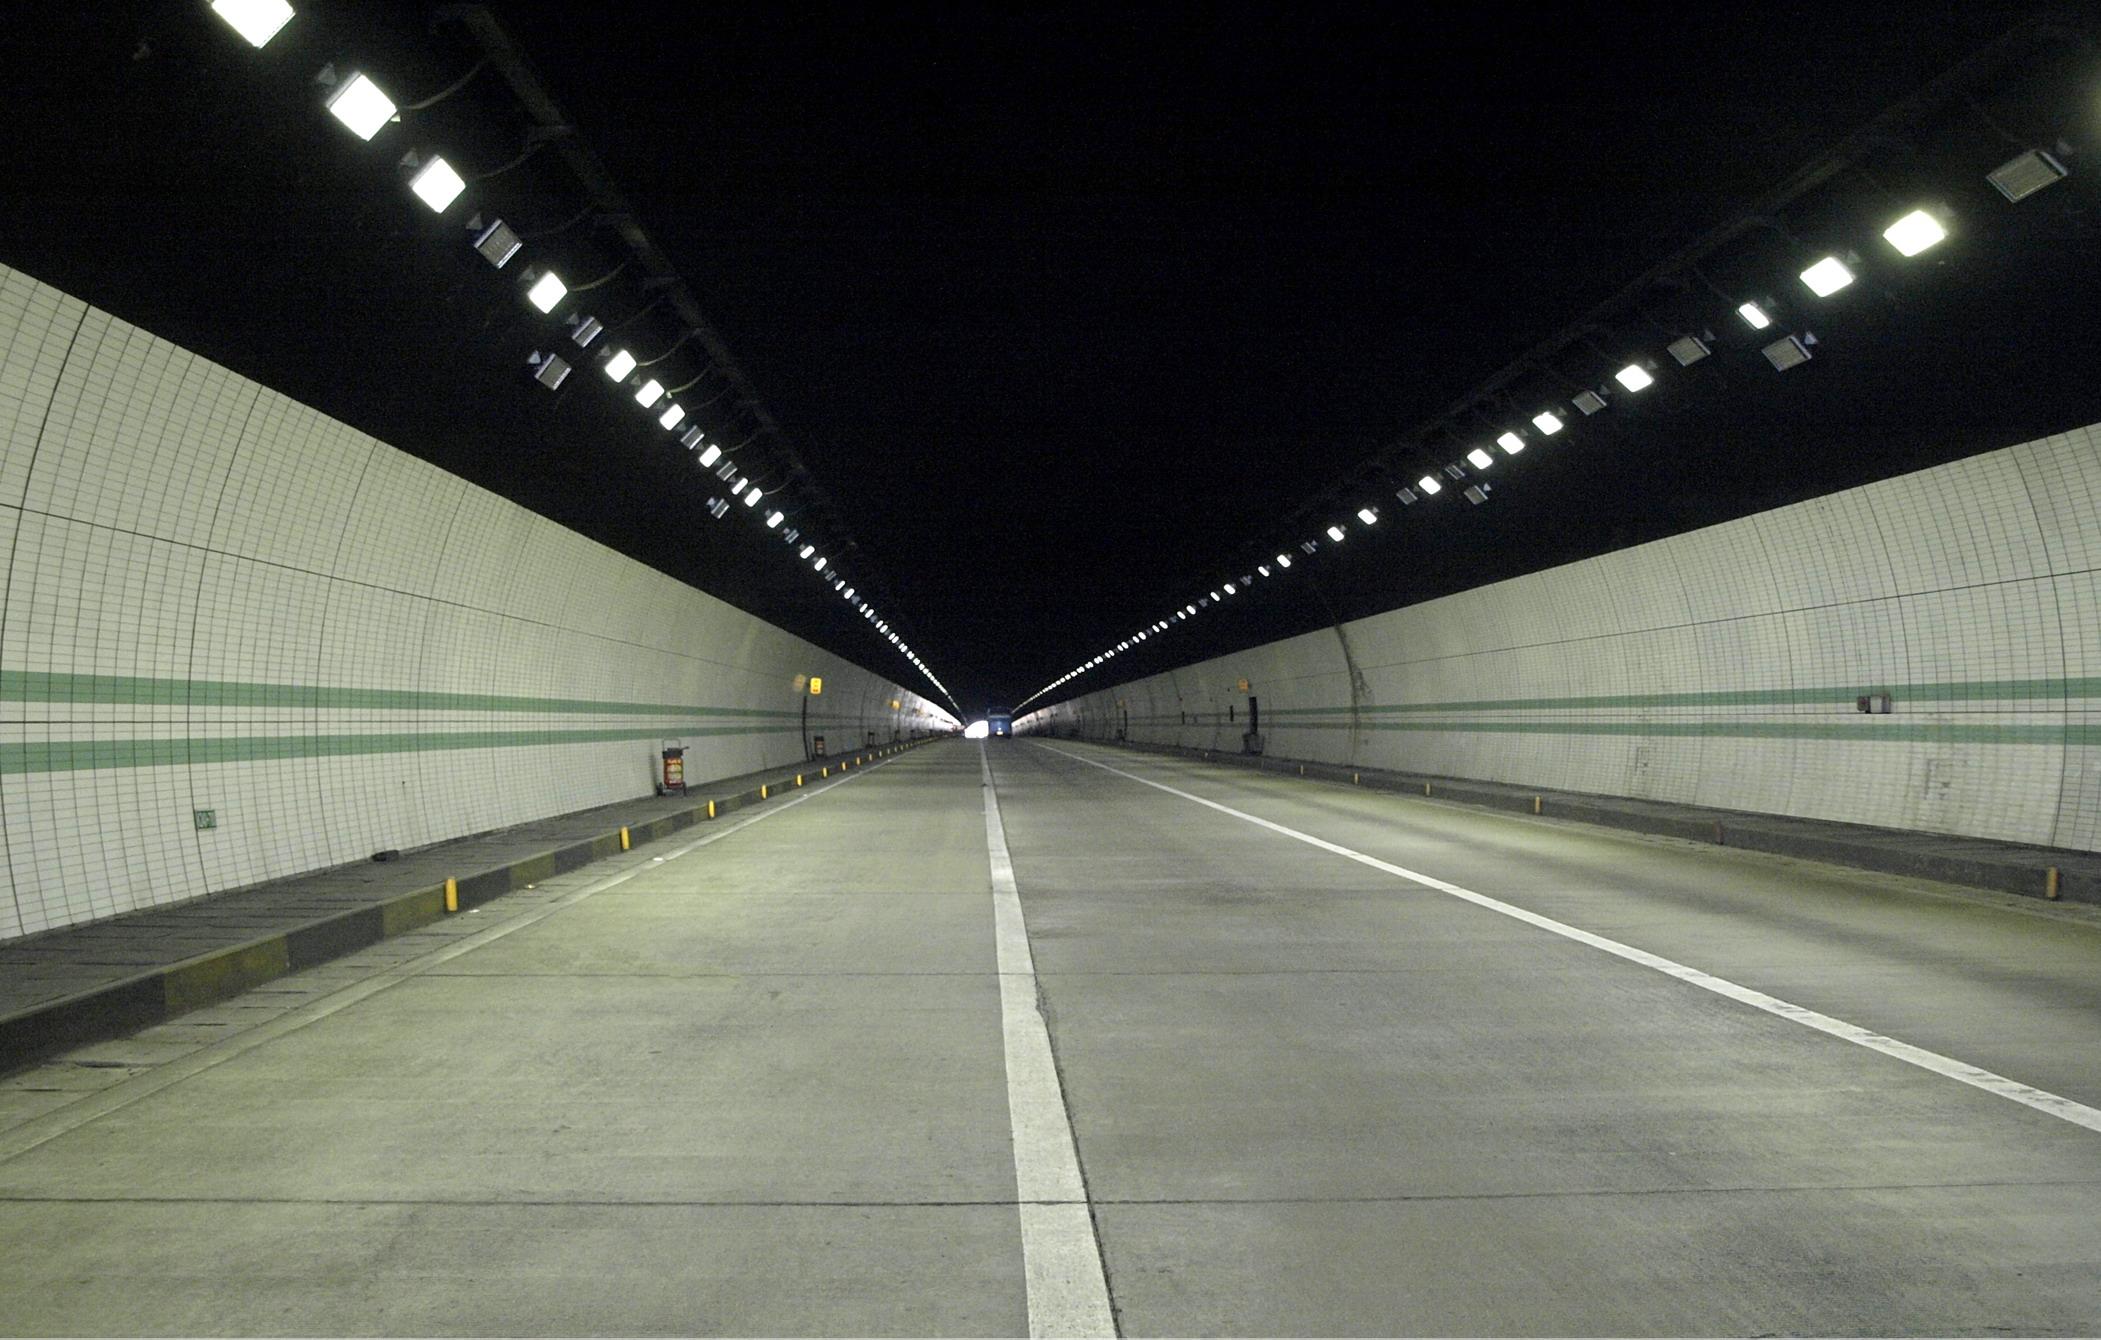 Новые светодиодные светильники «NORVEC» для автотранспортных тоннелей